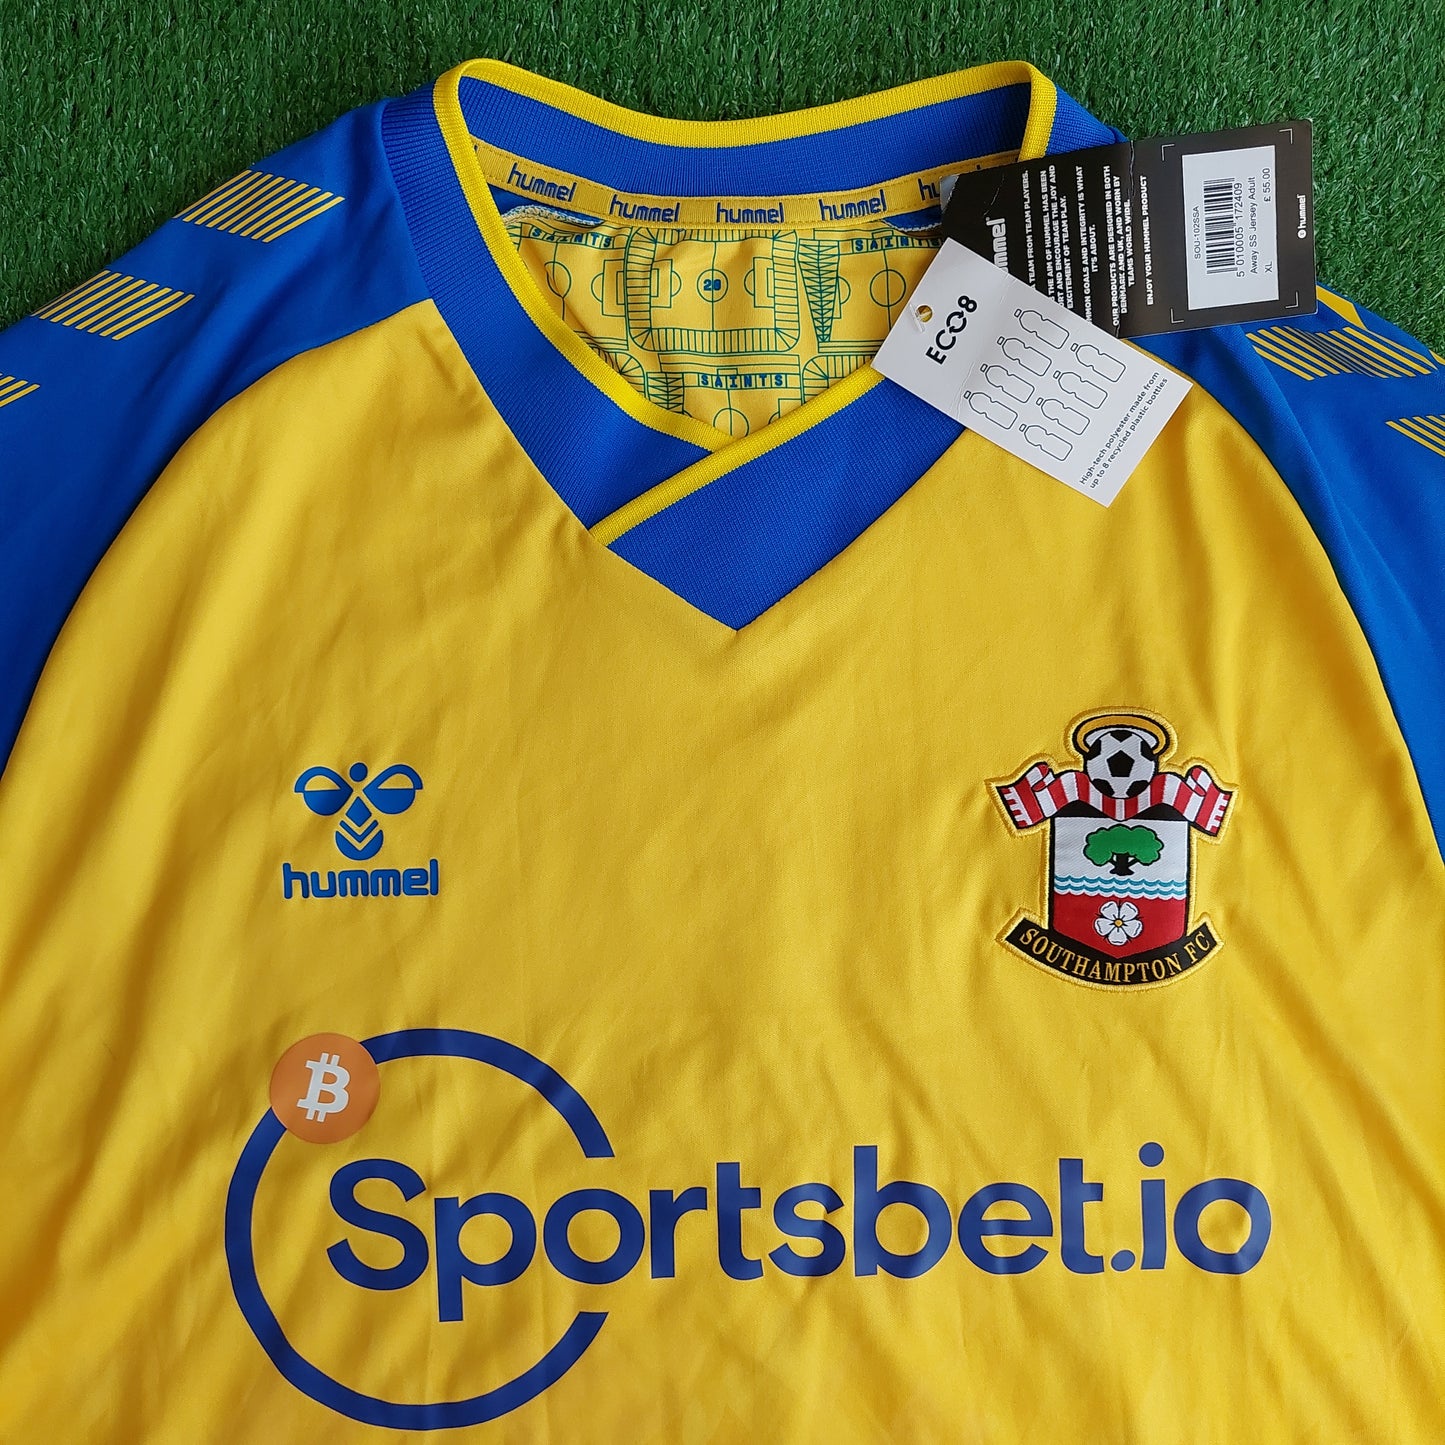 Southampton FC 2021/22 Away Shirt (BNWT) - Size XL